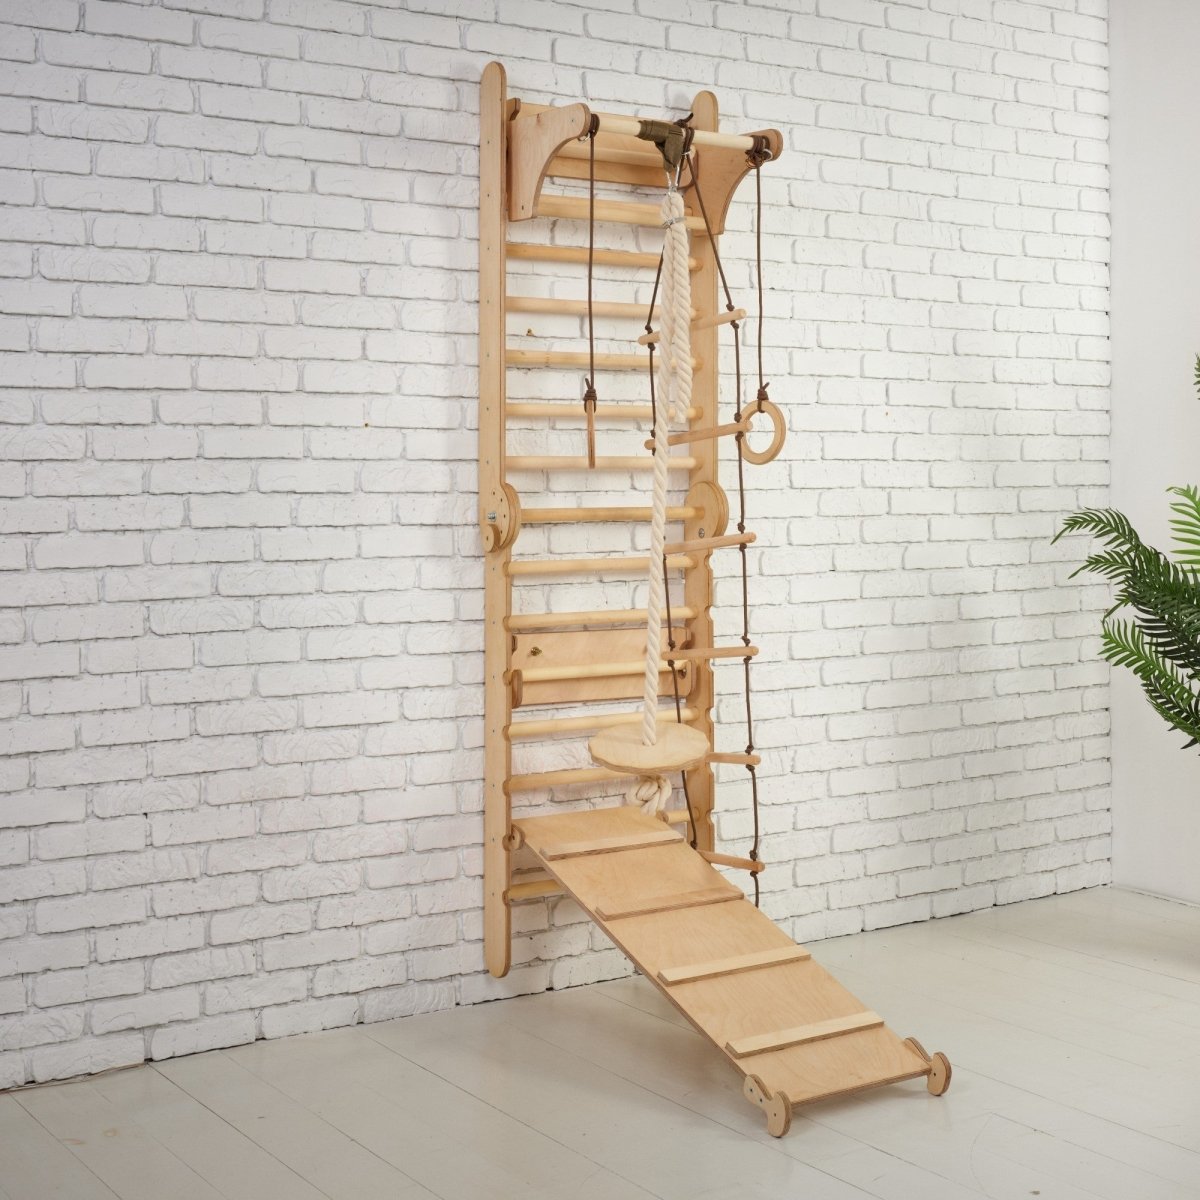 3in1: Wooden Swedish Wall / Climbing ladder + Swing Set + Slide Board